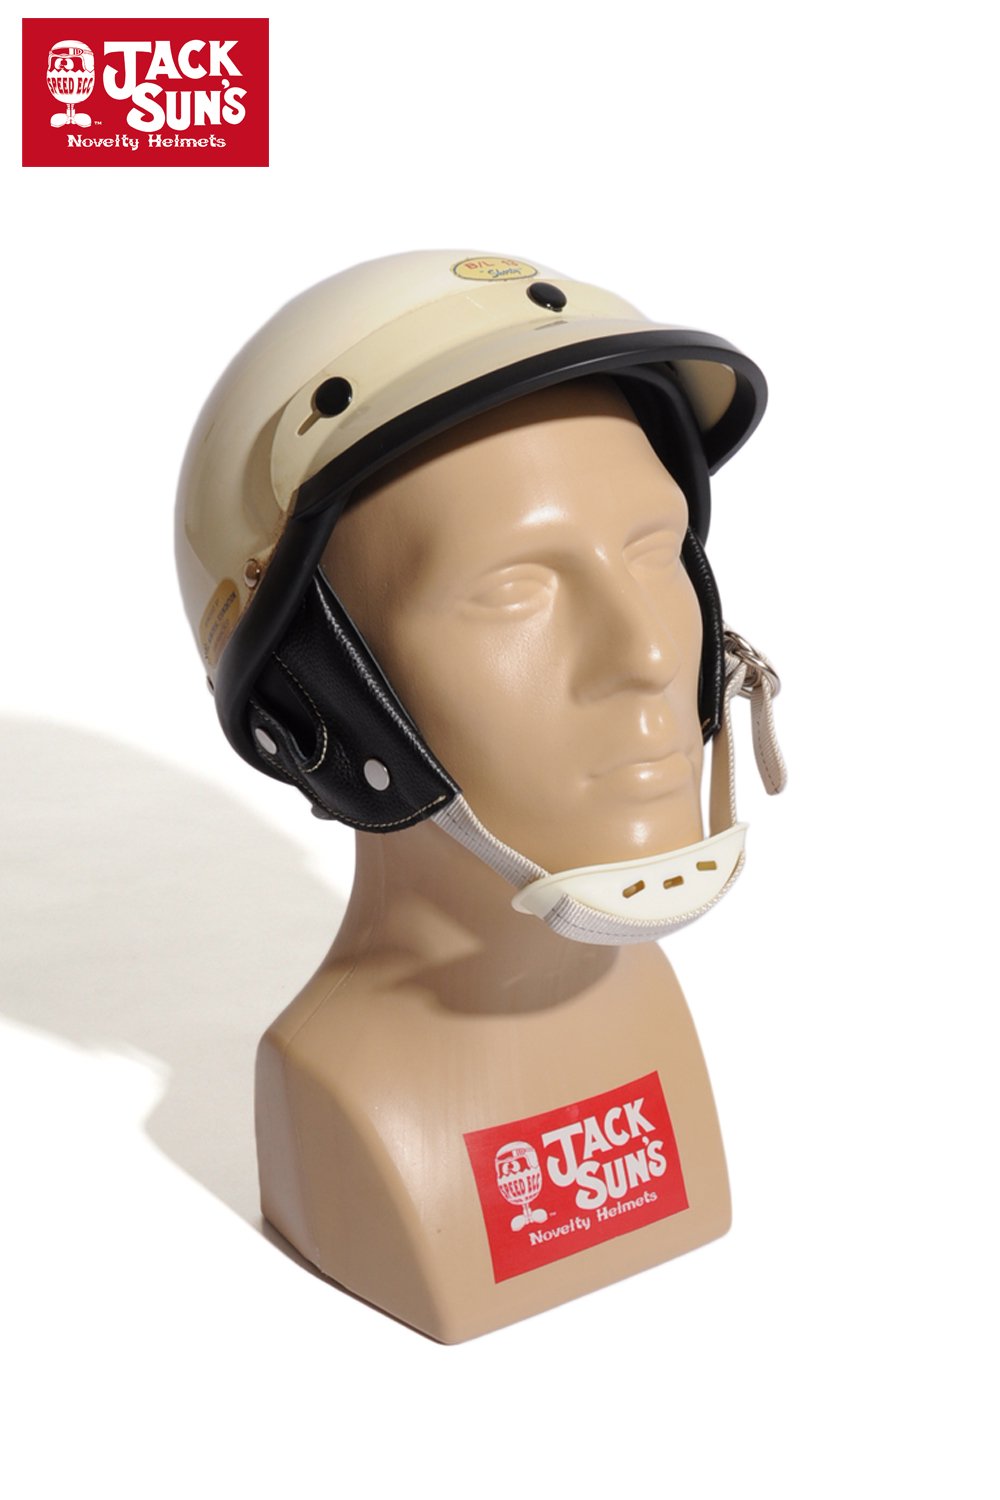 JACKSUN'S(ジャックサンズ) ヘルメット BL 13 SHORTY 通販正規取扱